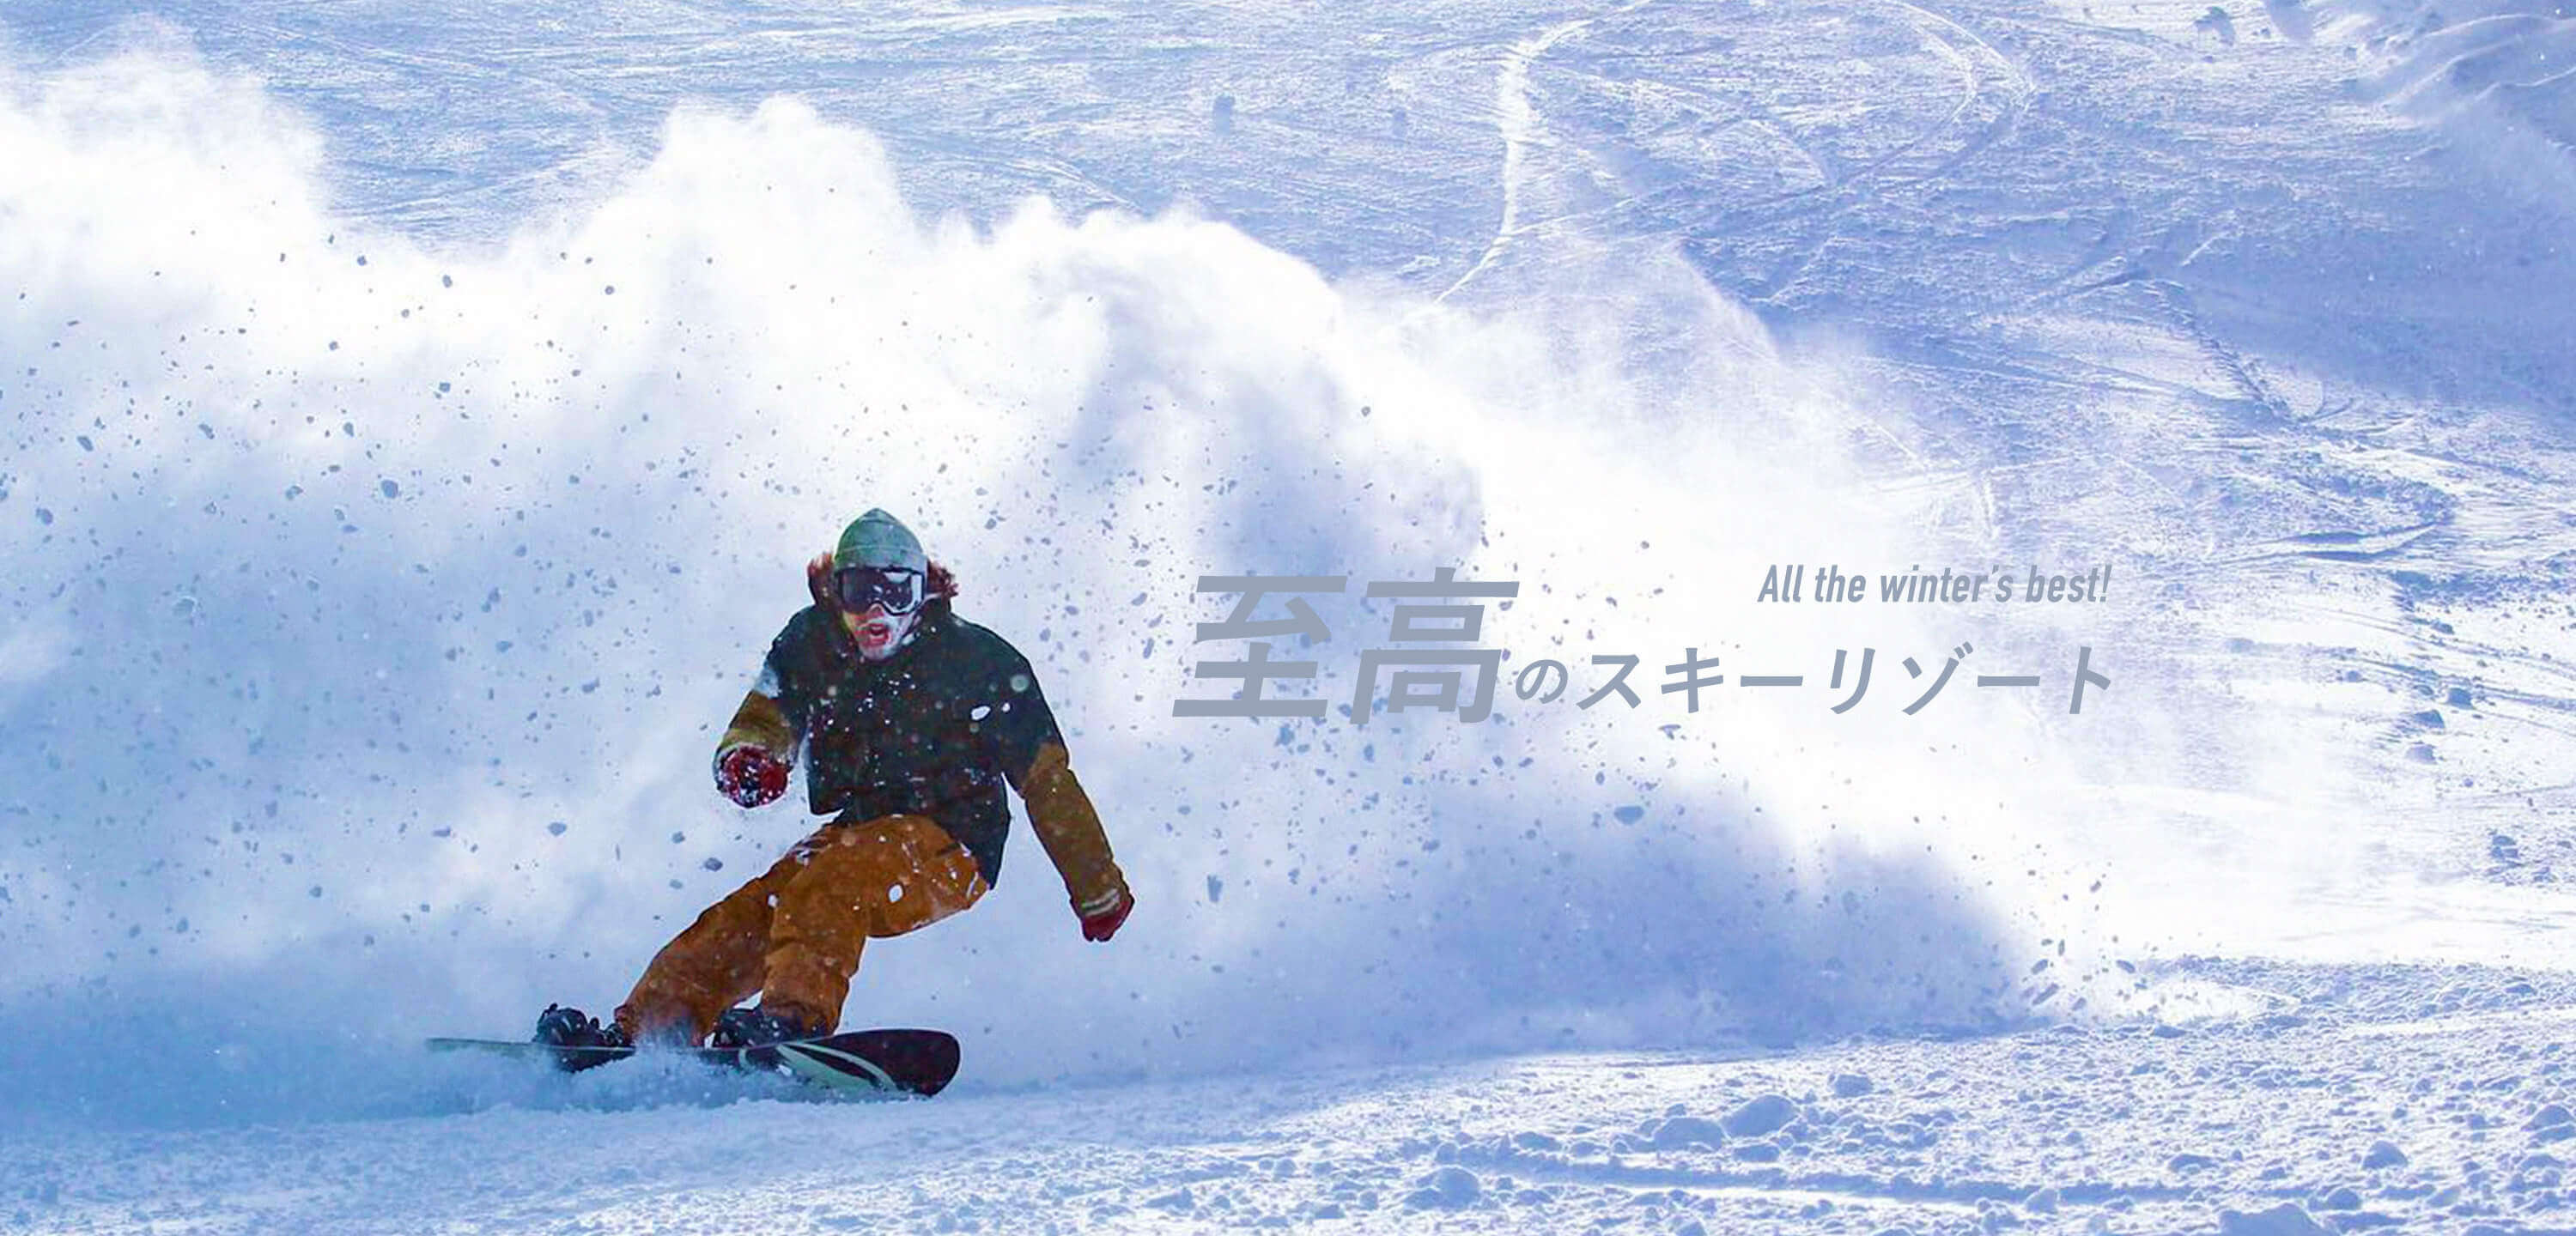 2021スライドショー 至高のスキーリゾート All the winter’s best!